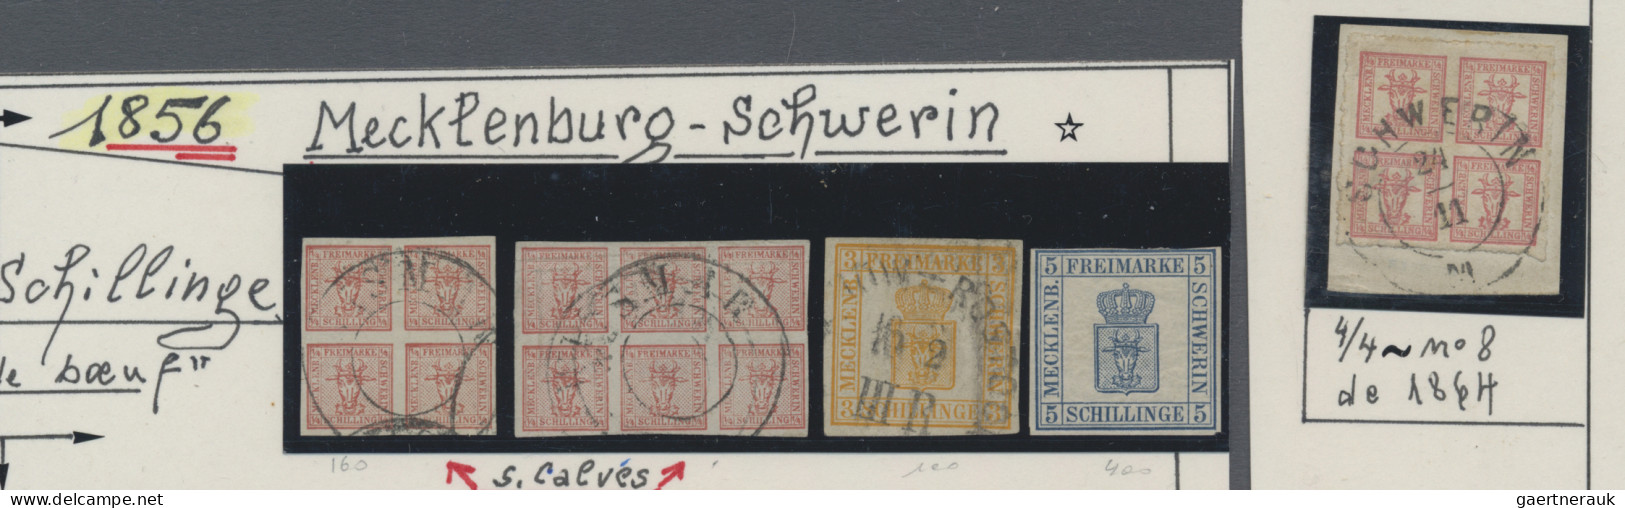 Altdeutschland: 1849/1867 (ca), Partie auf Steckkarten, meist gestempelt sowie e